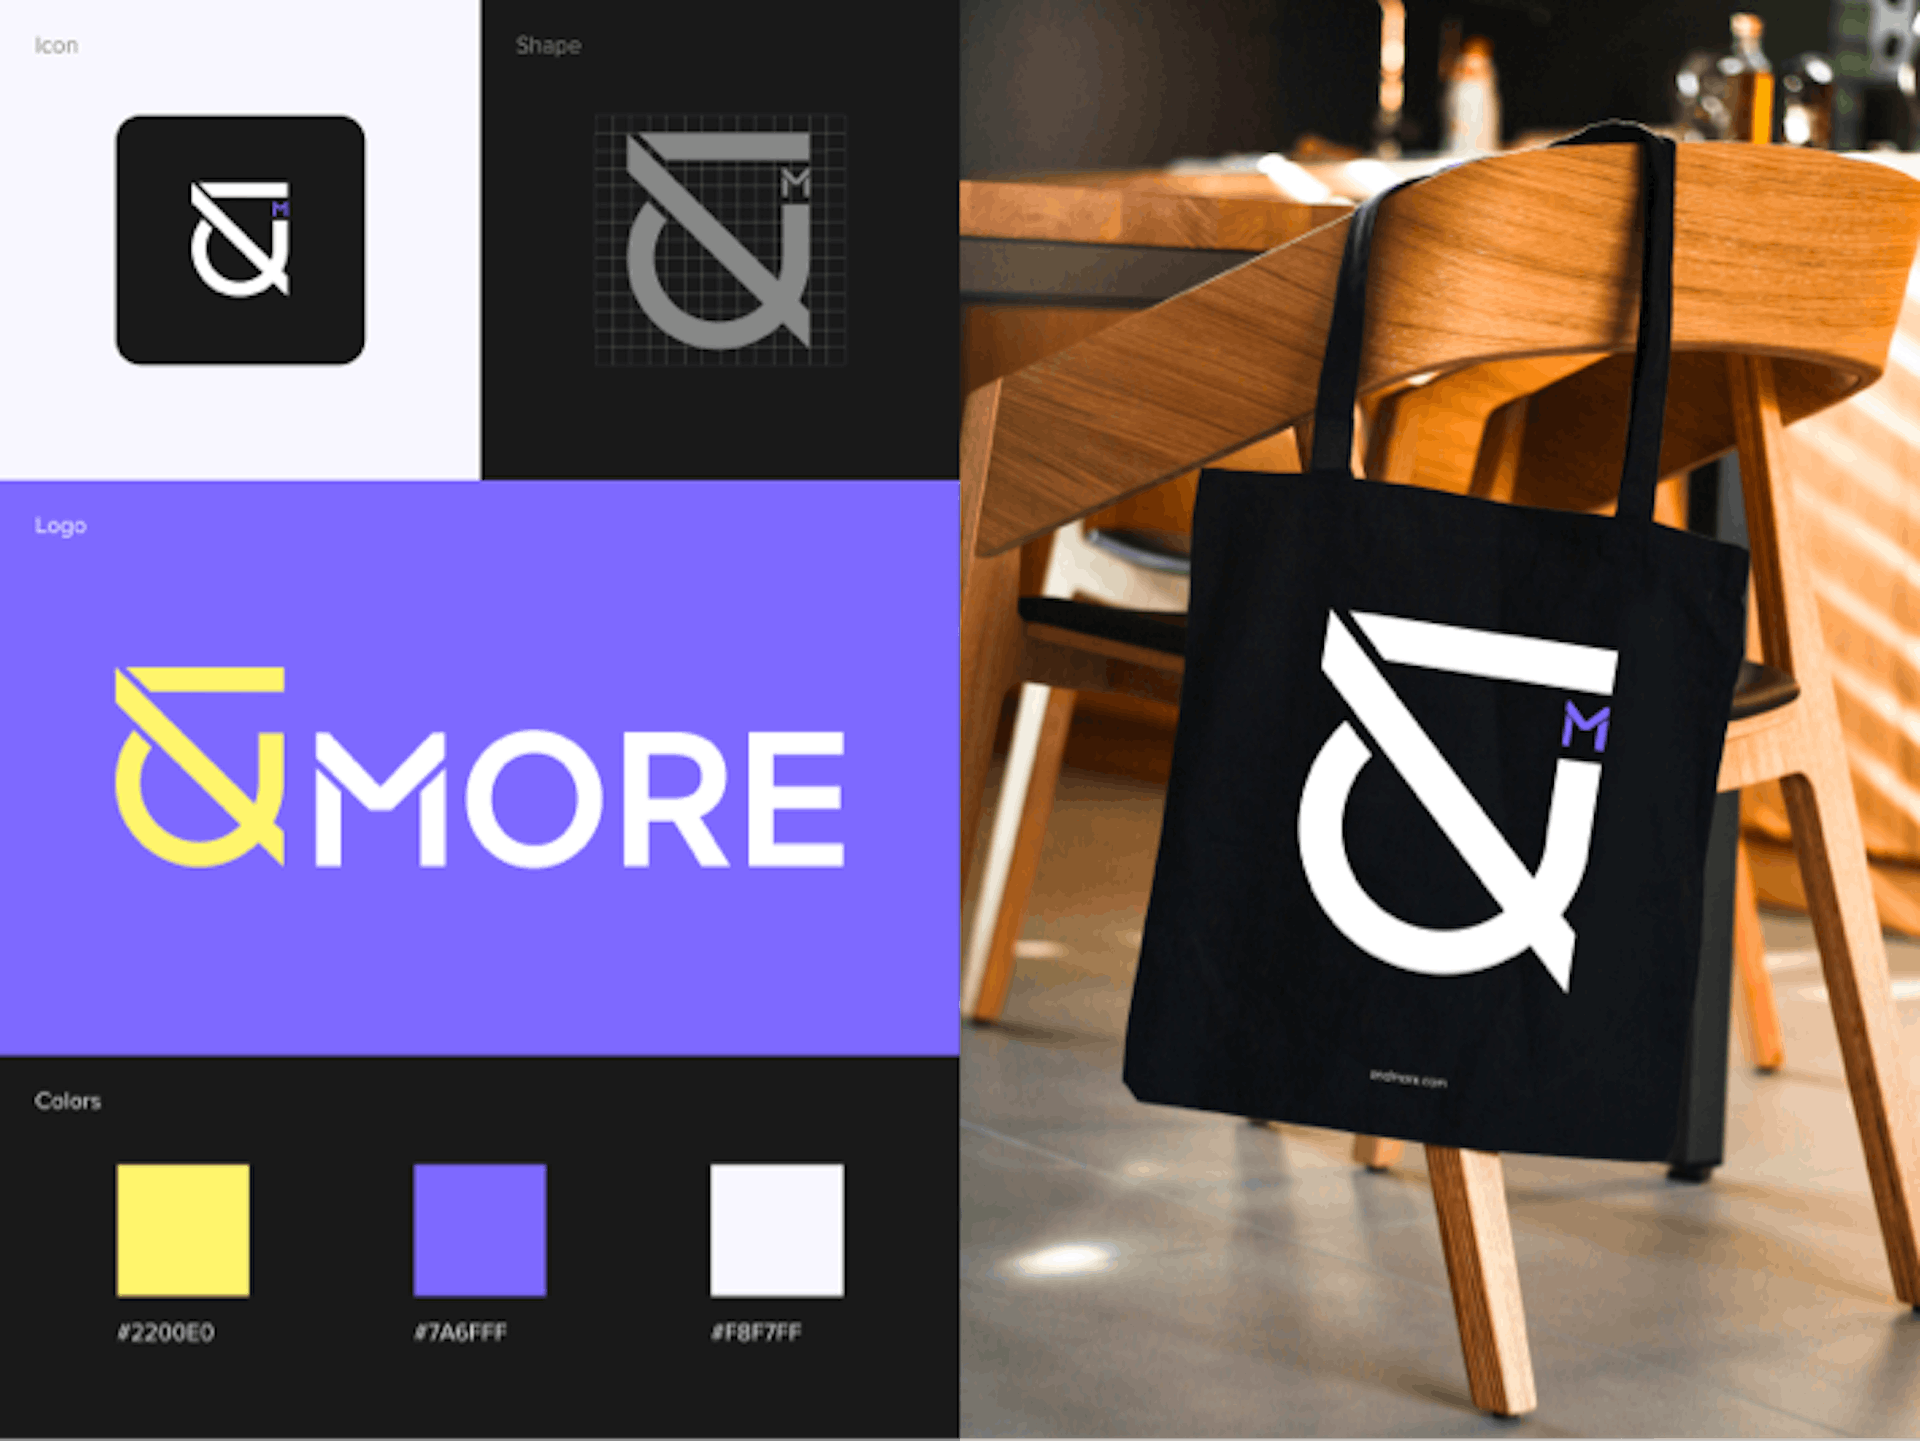 MORE — Logo Design for Cashback service